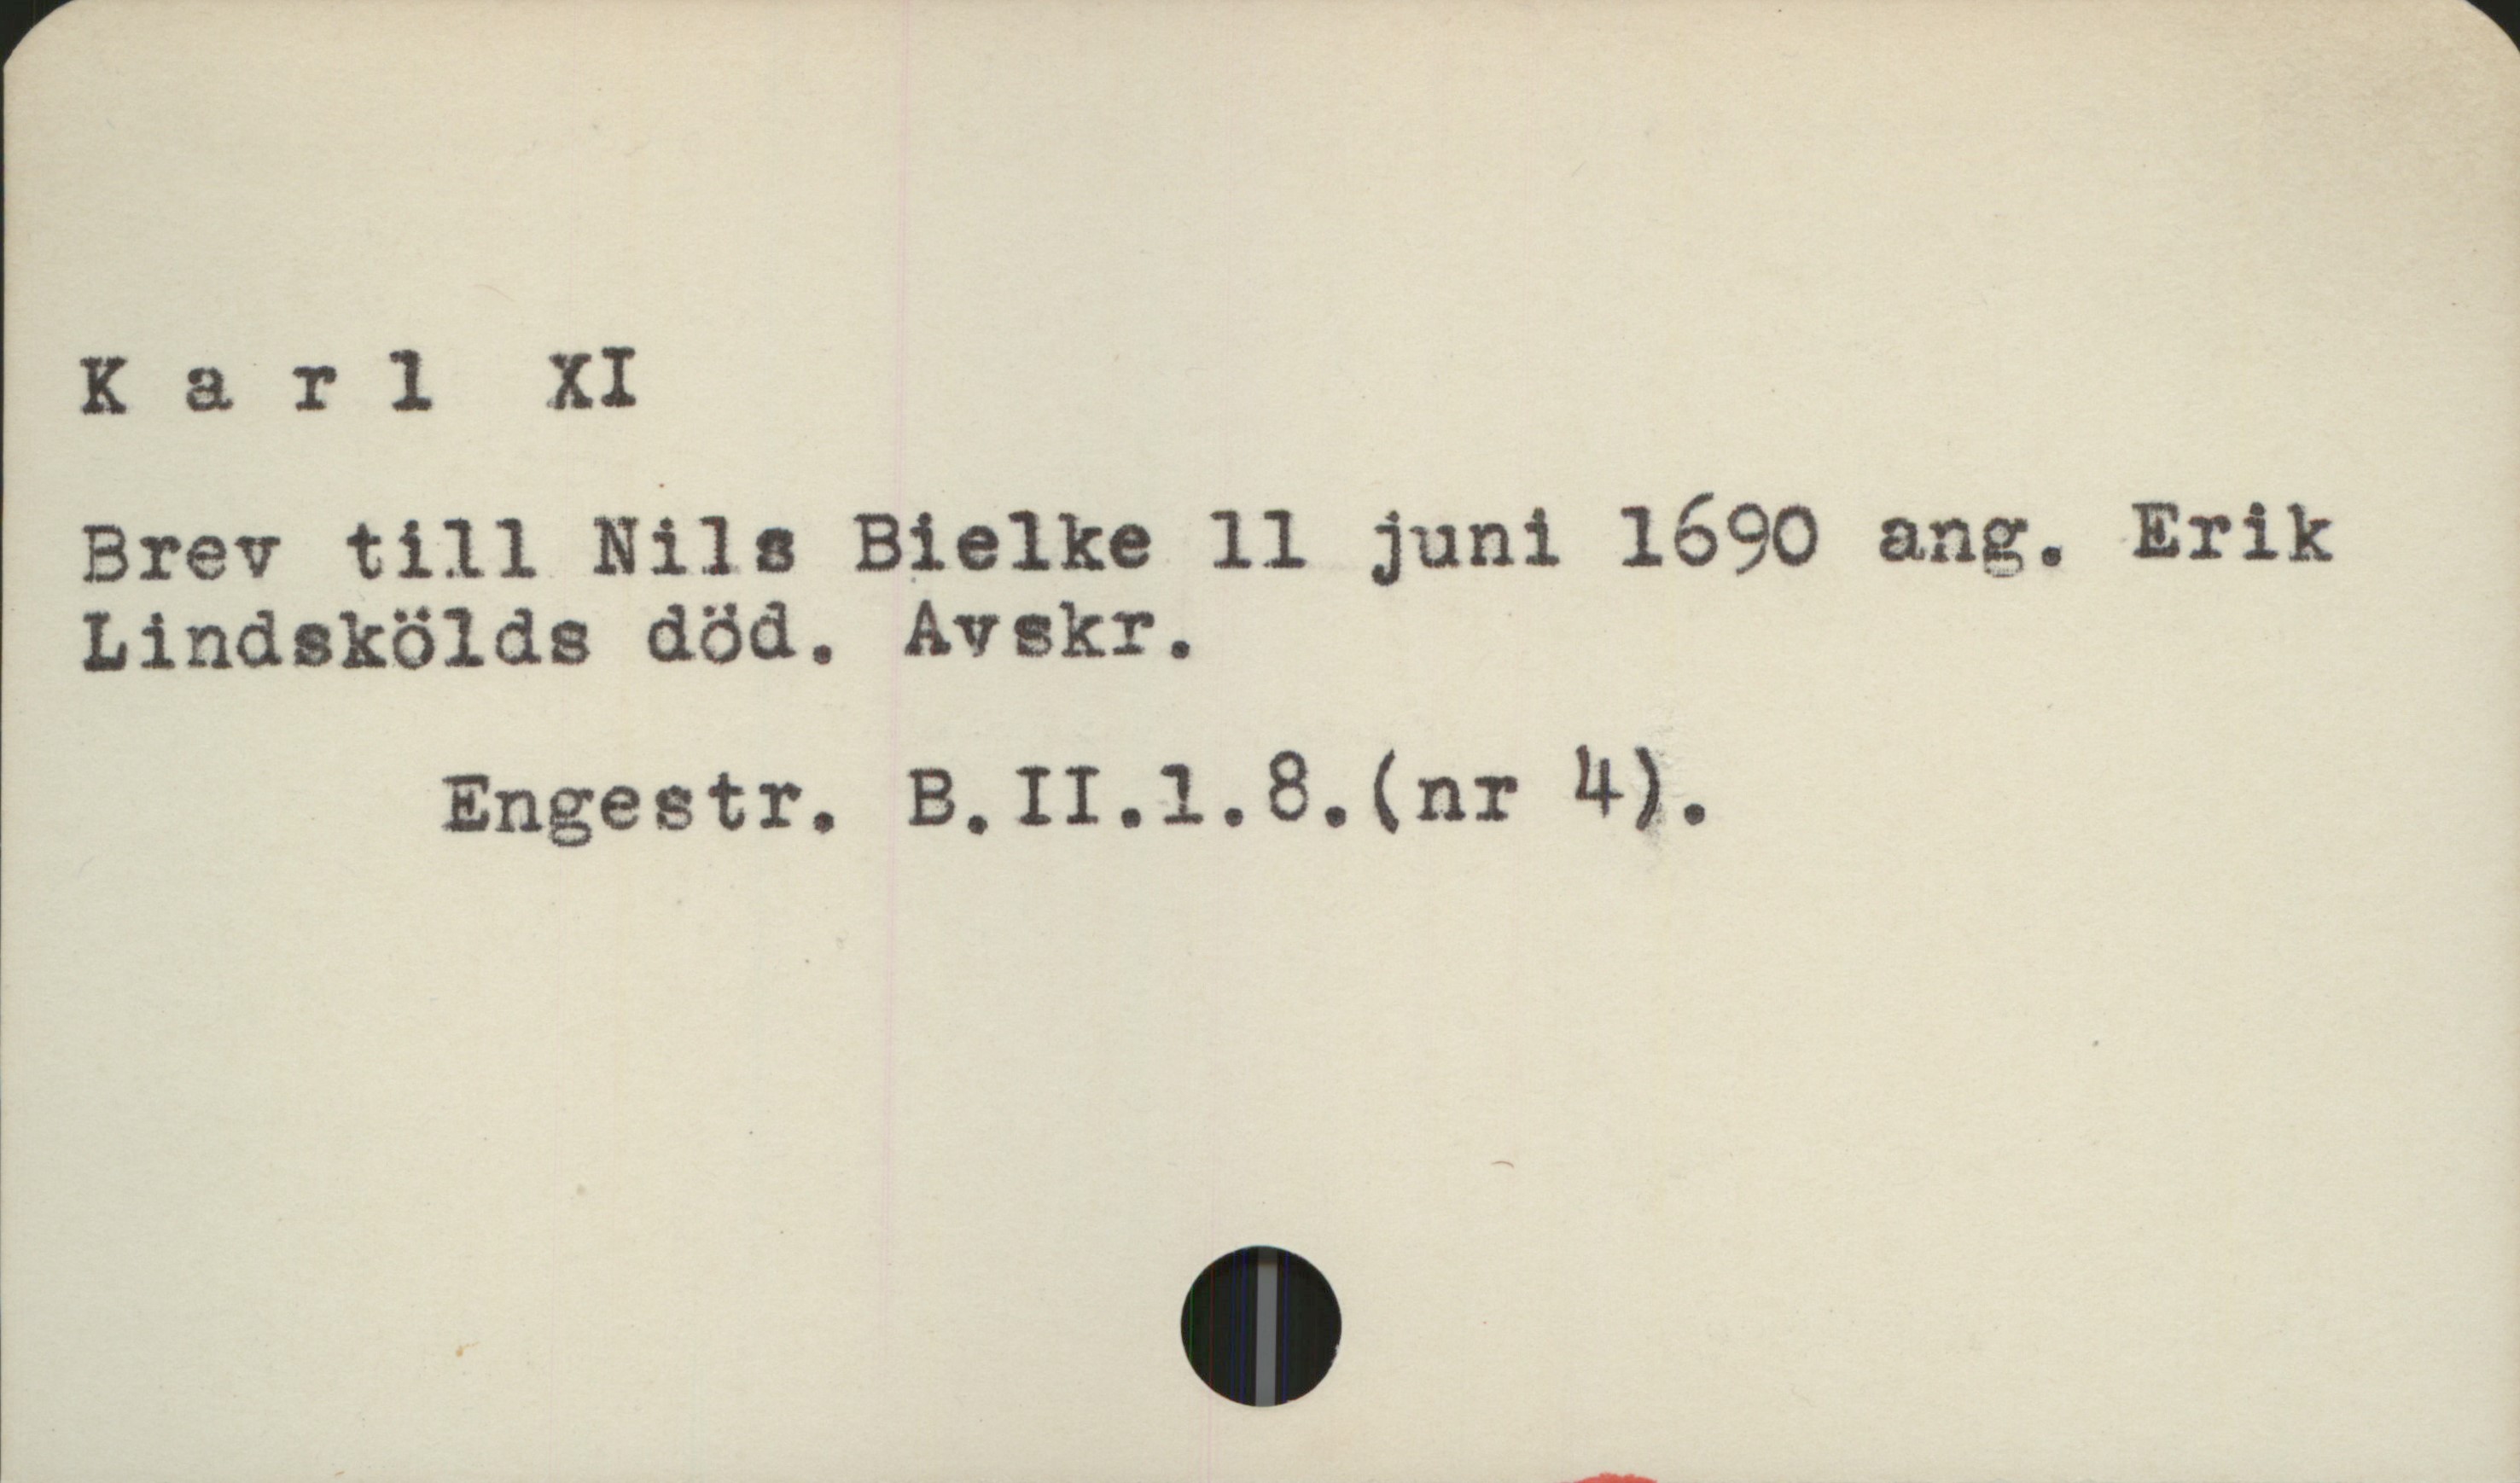  Karl XI i
Brev till Nils Bielke 11 juni 1690 ang. Erik
Lindskölds död. Avskr.

Engestr. B.II.1.8.(nr !l).

